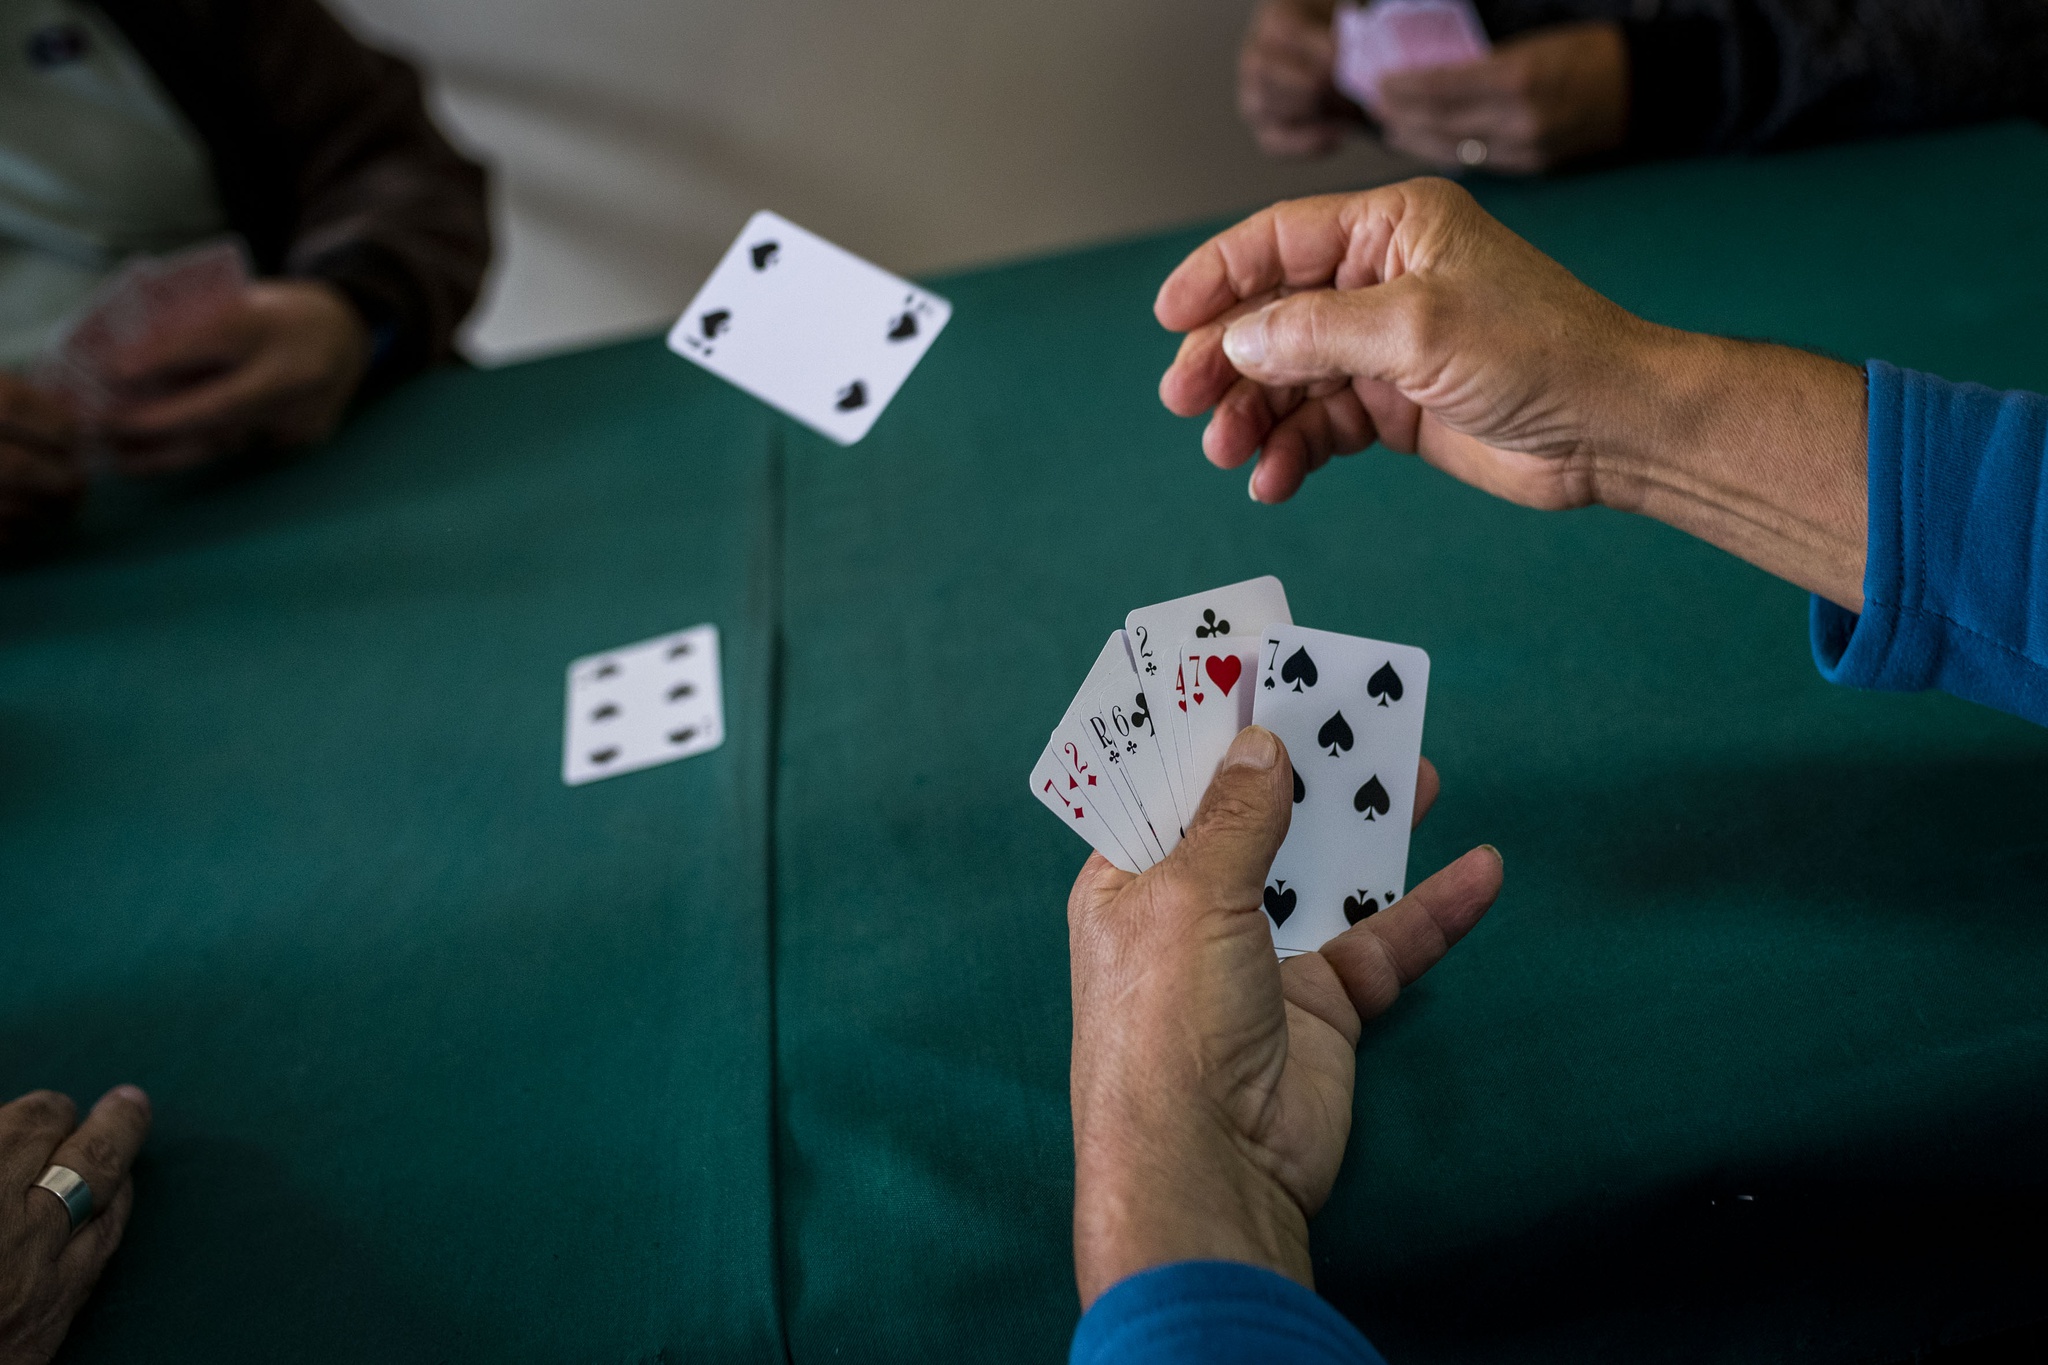 Novo surto de Covid-19 com origem em jogo de cartas entre idosos sem  máscara - Renascença